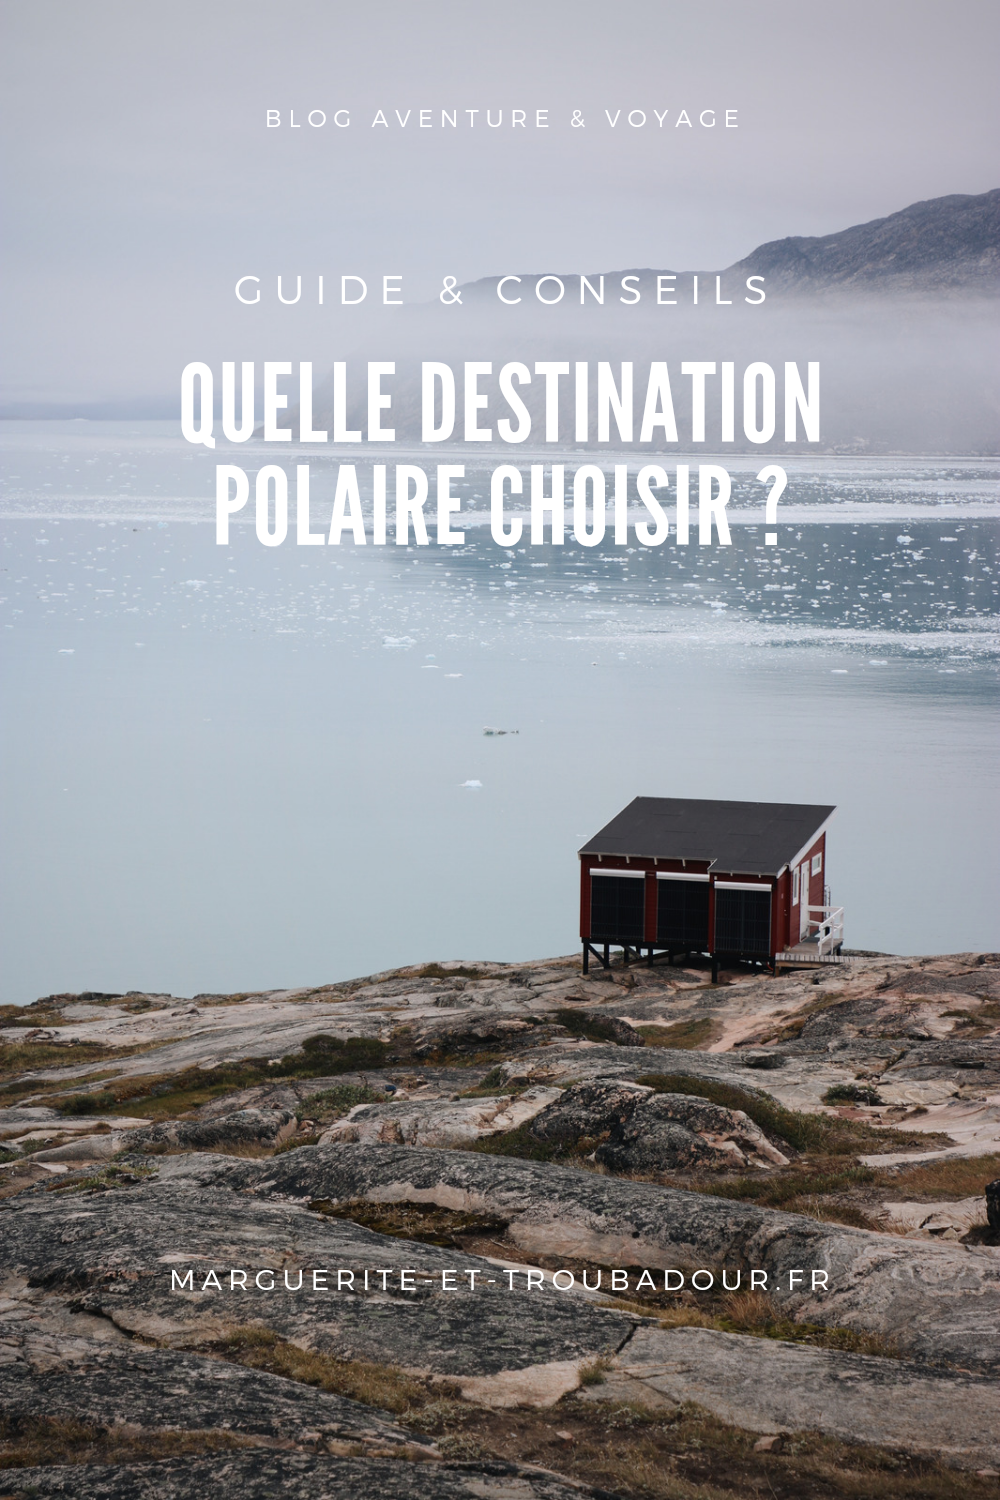 Quelle destination polaire choisir ?